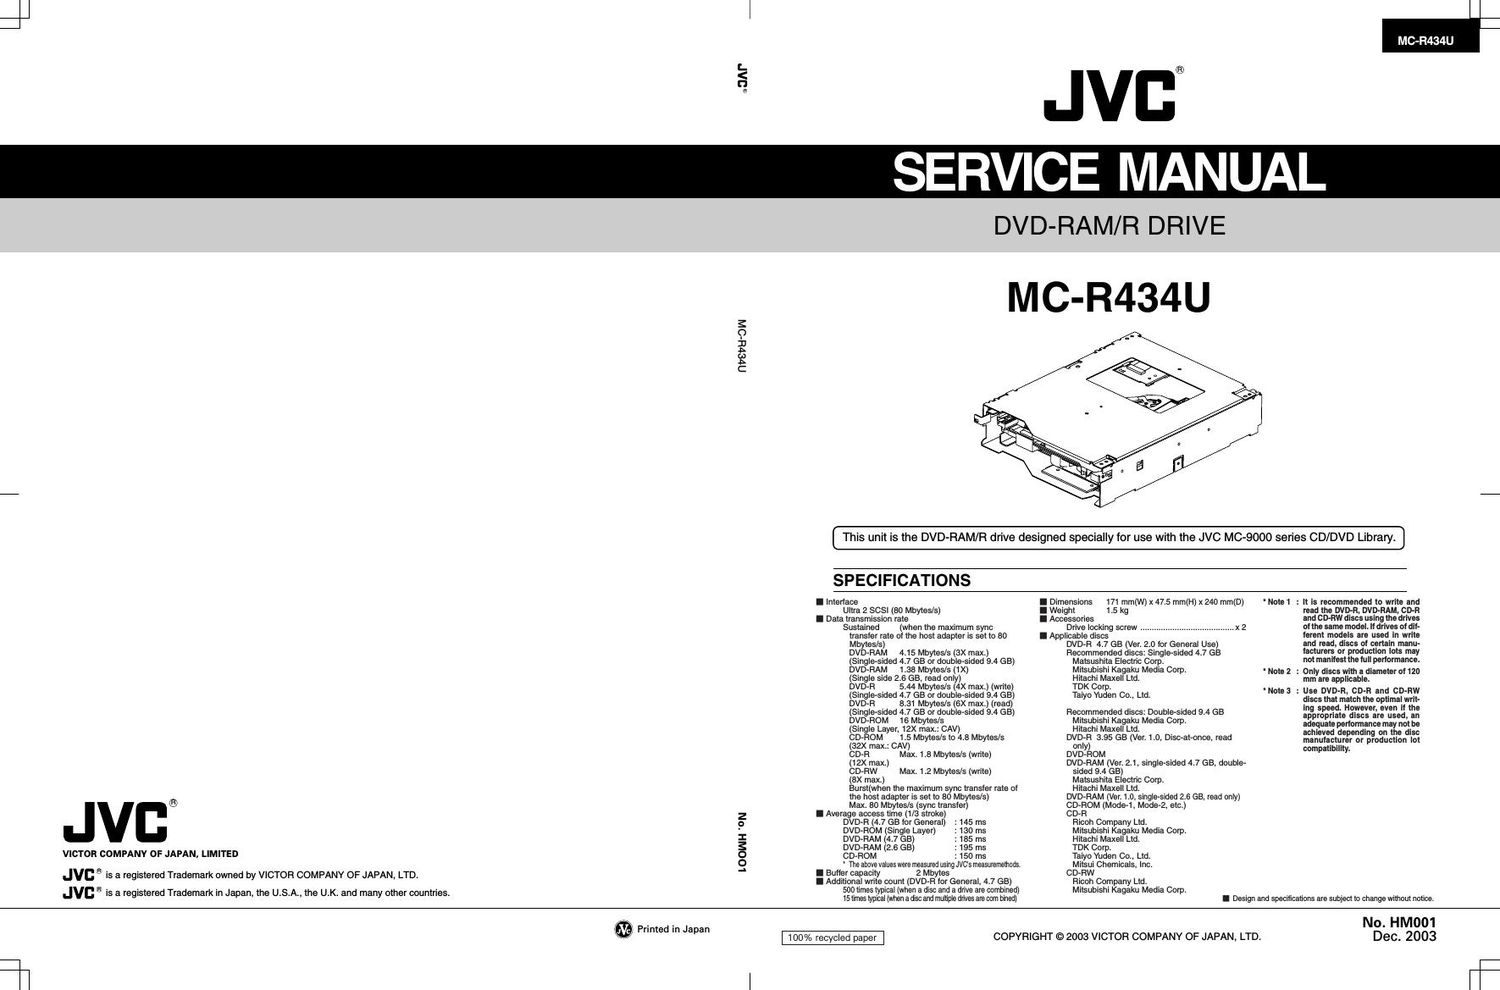 Jvc MCR 434 U Service Manual